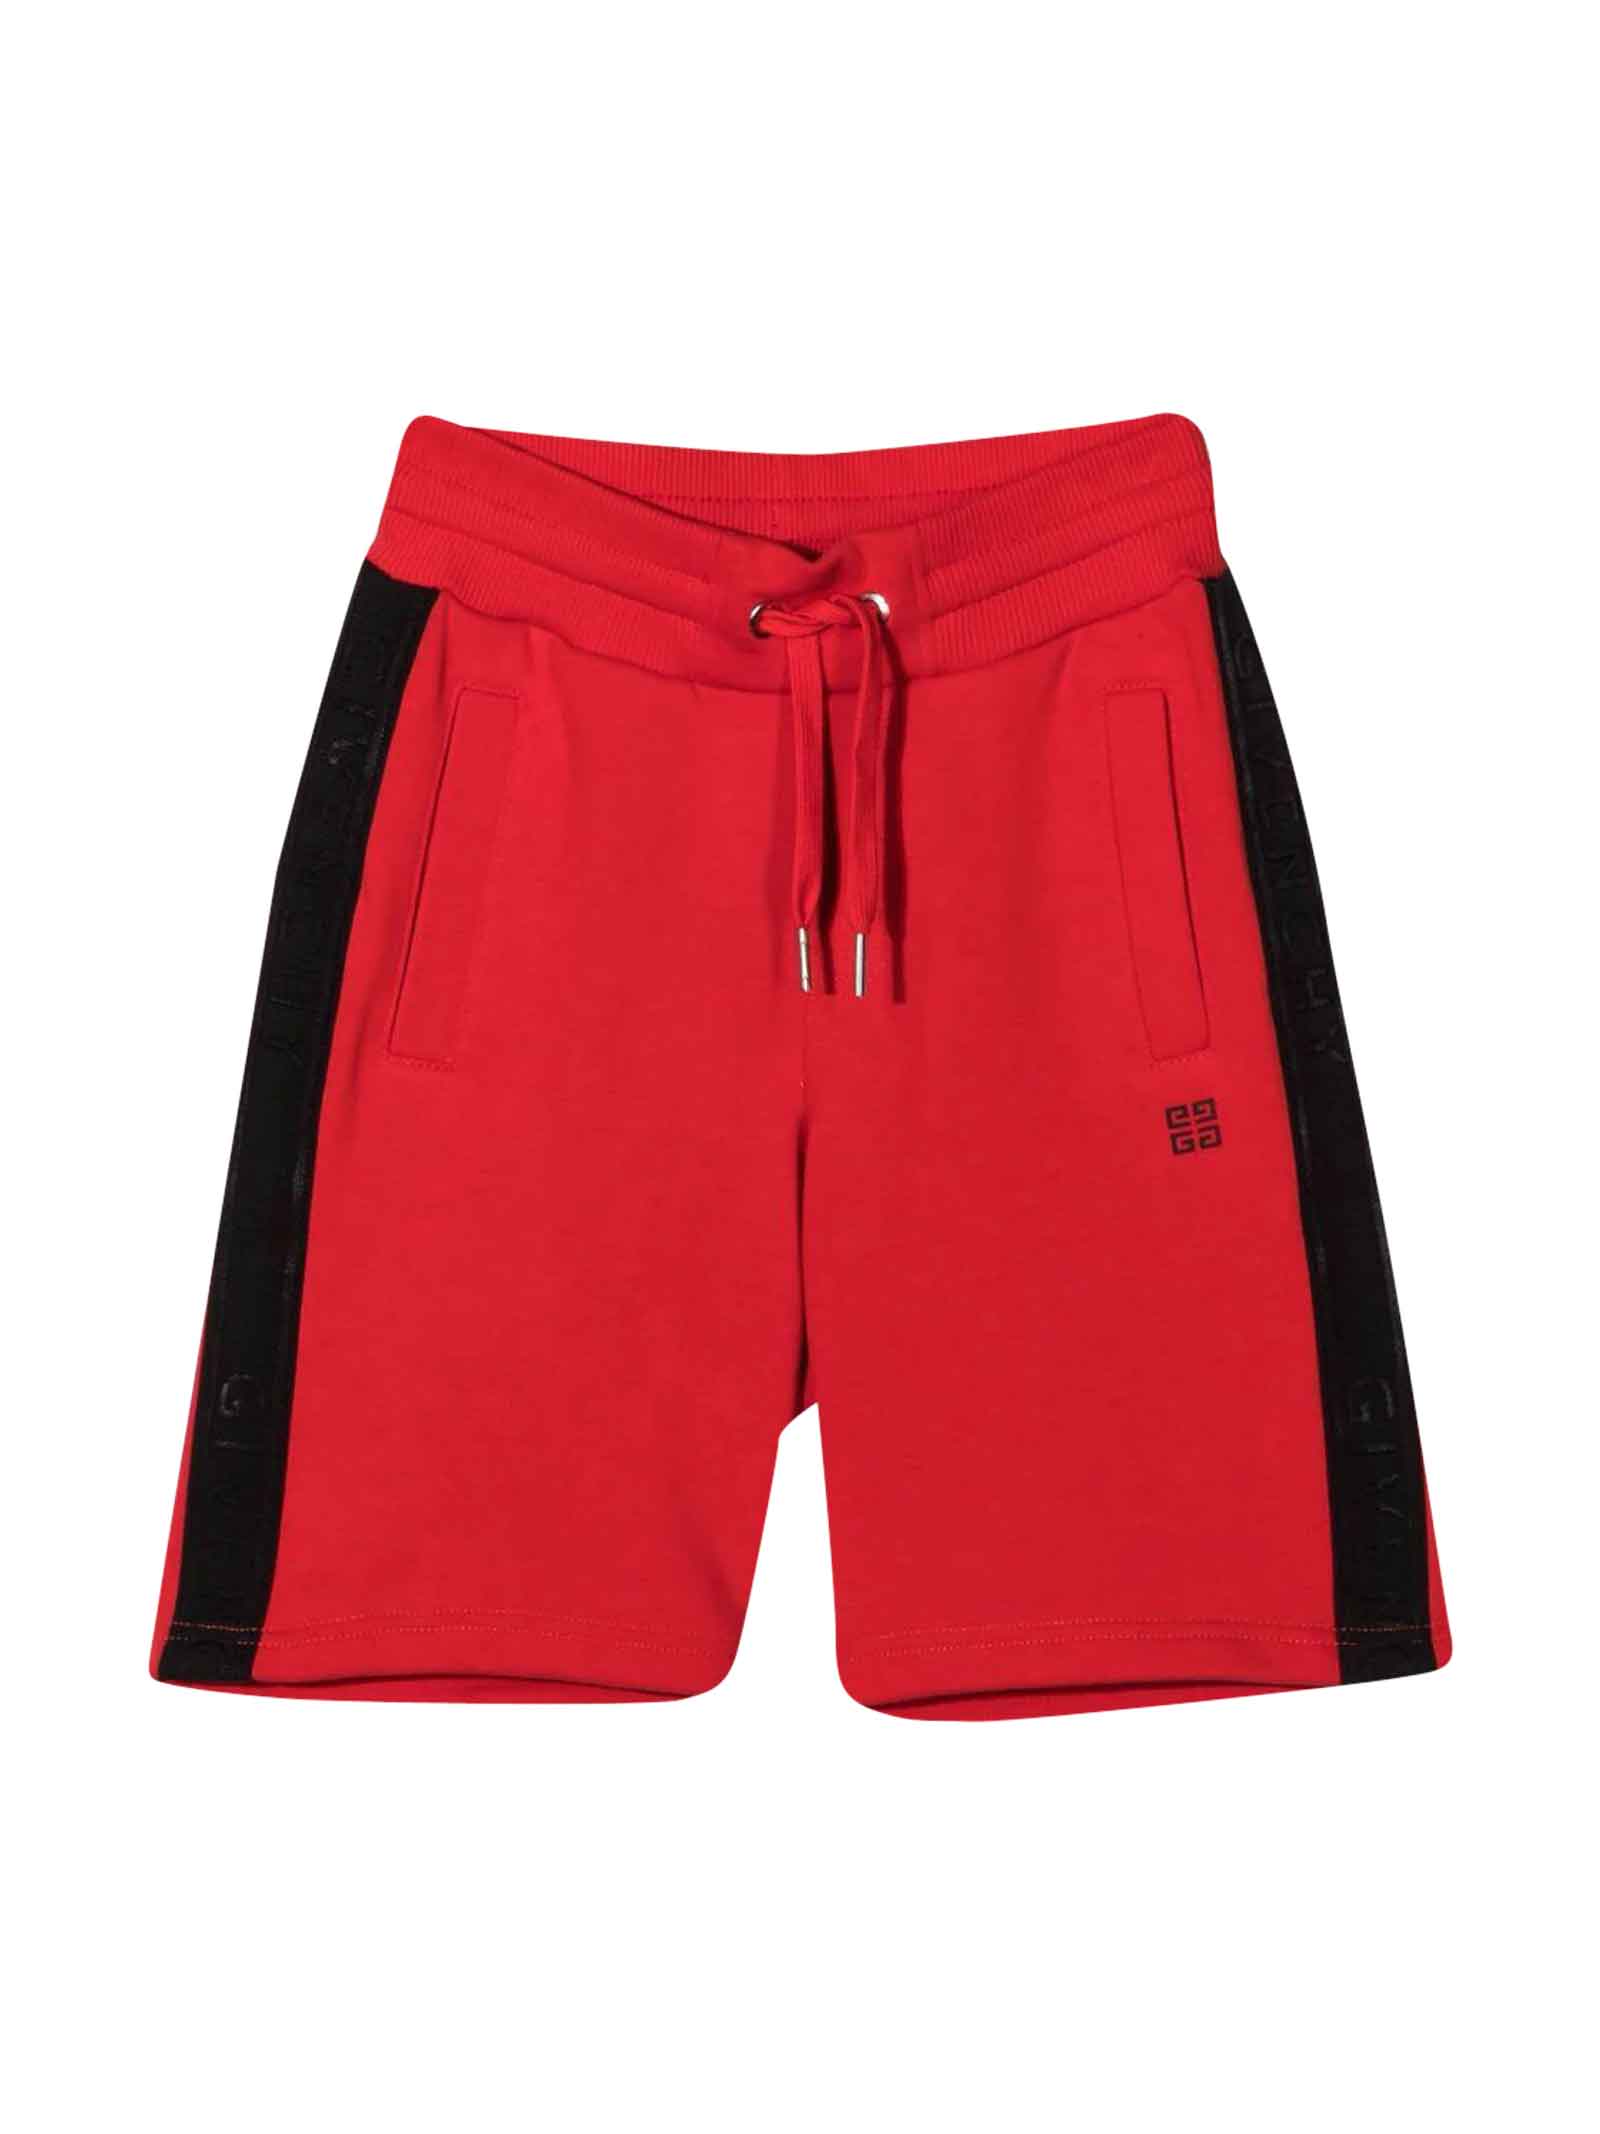 Givenchy Black And Red Bermuda Shorts